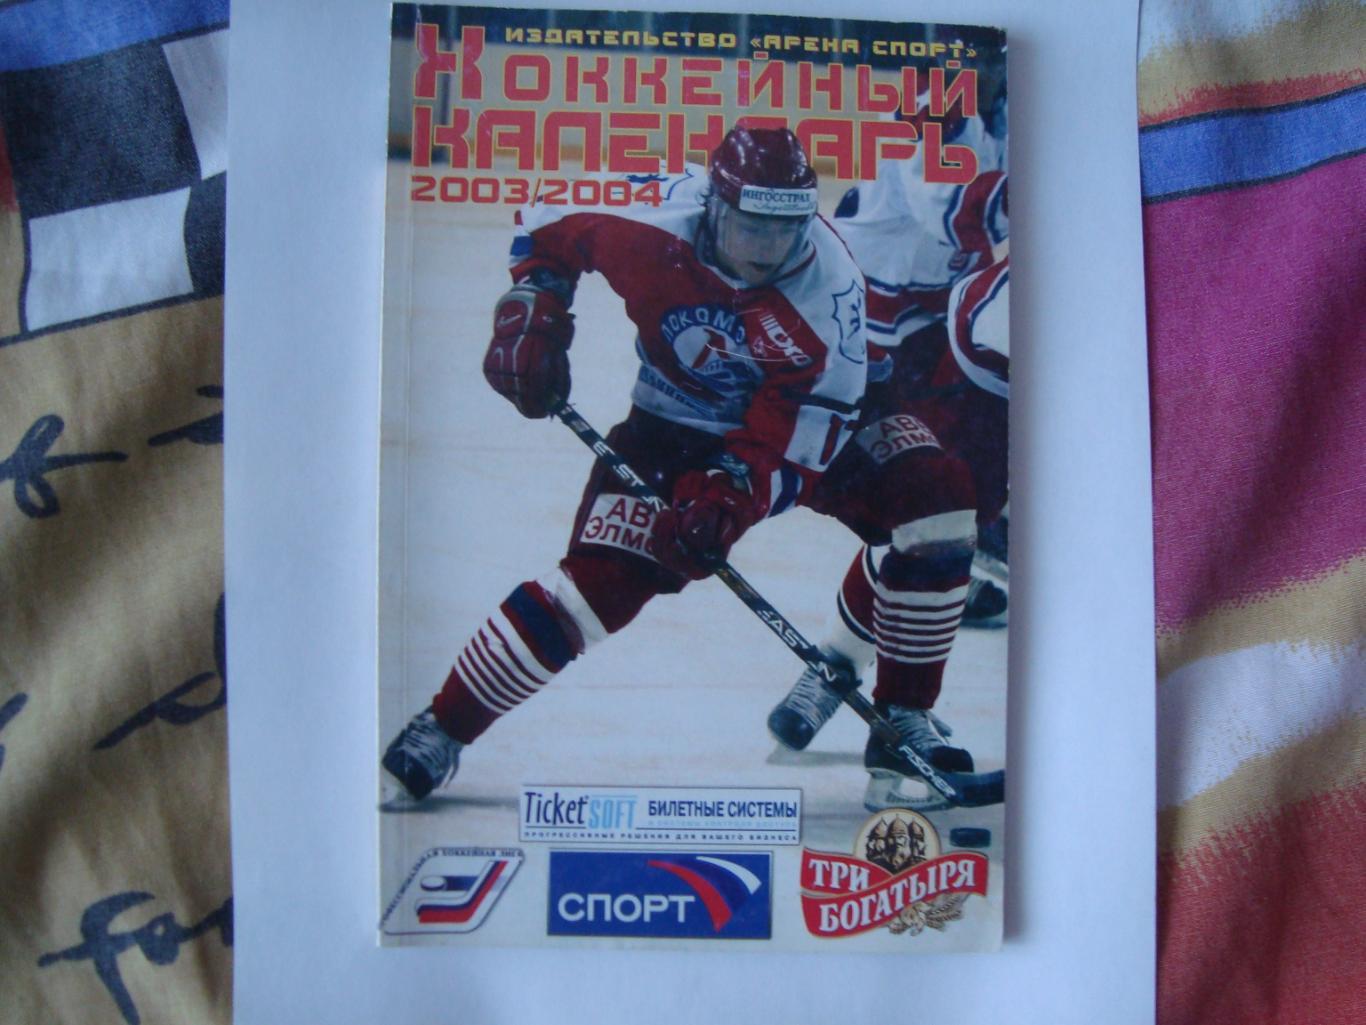 Хоккейный календарь 2003/2004 Москва Арена спорт